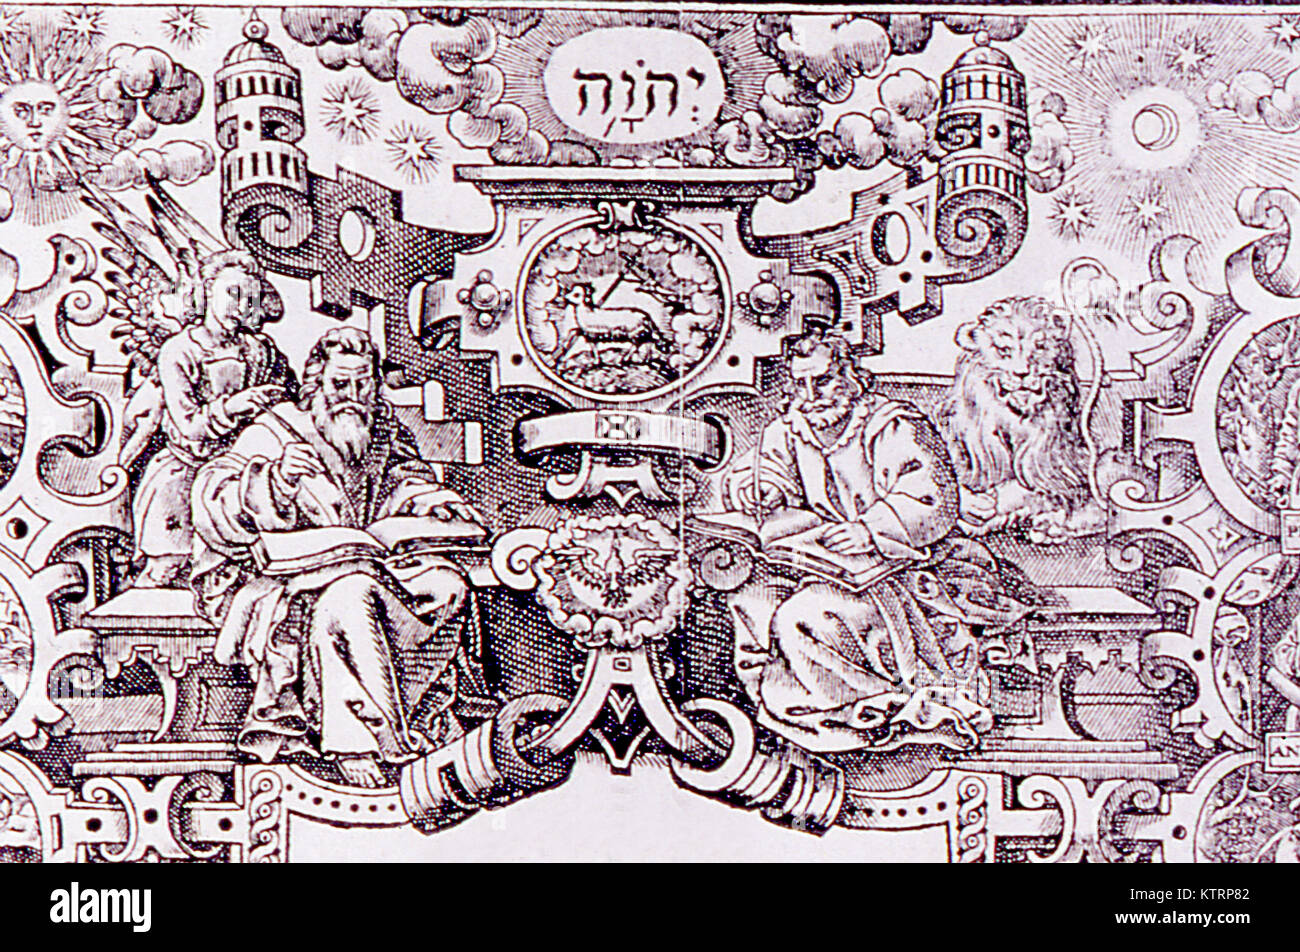 Détail de la page de titre du Nouveau Testament à partir de l'AV 1611 Banque D'Images